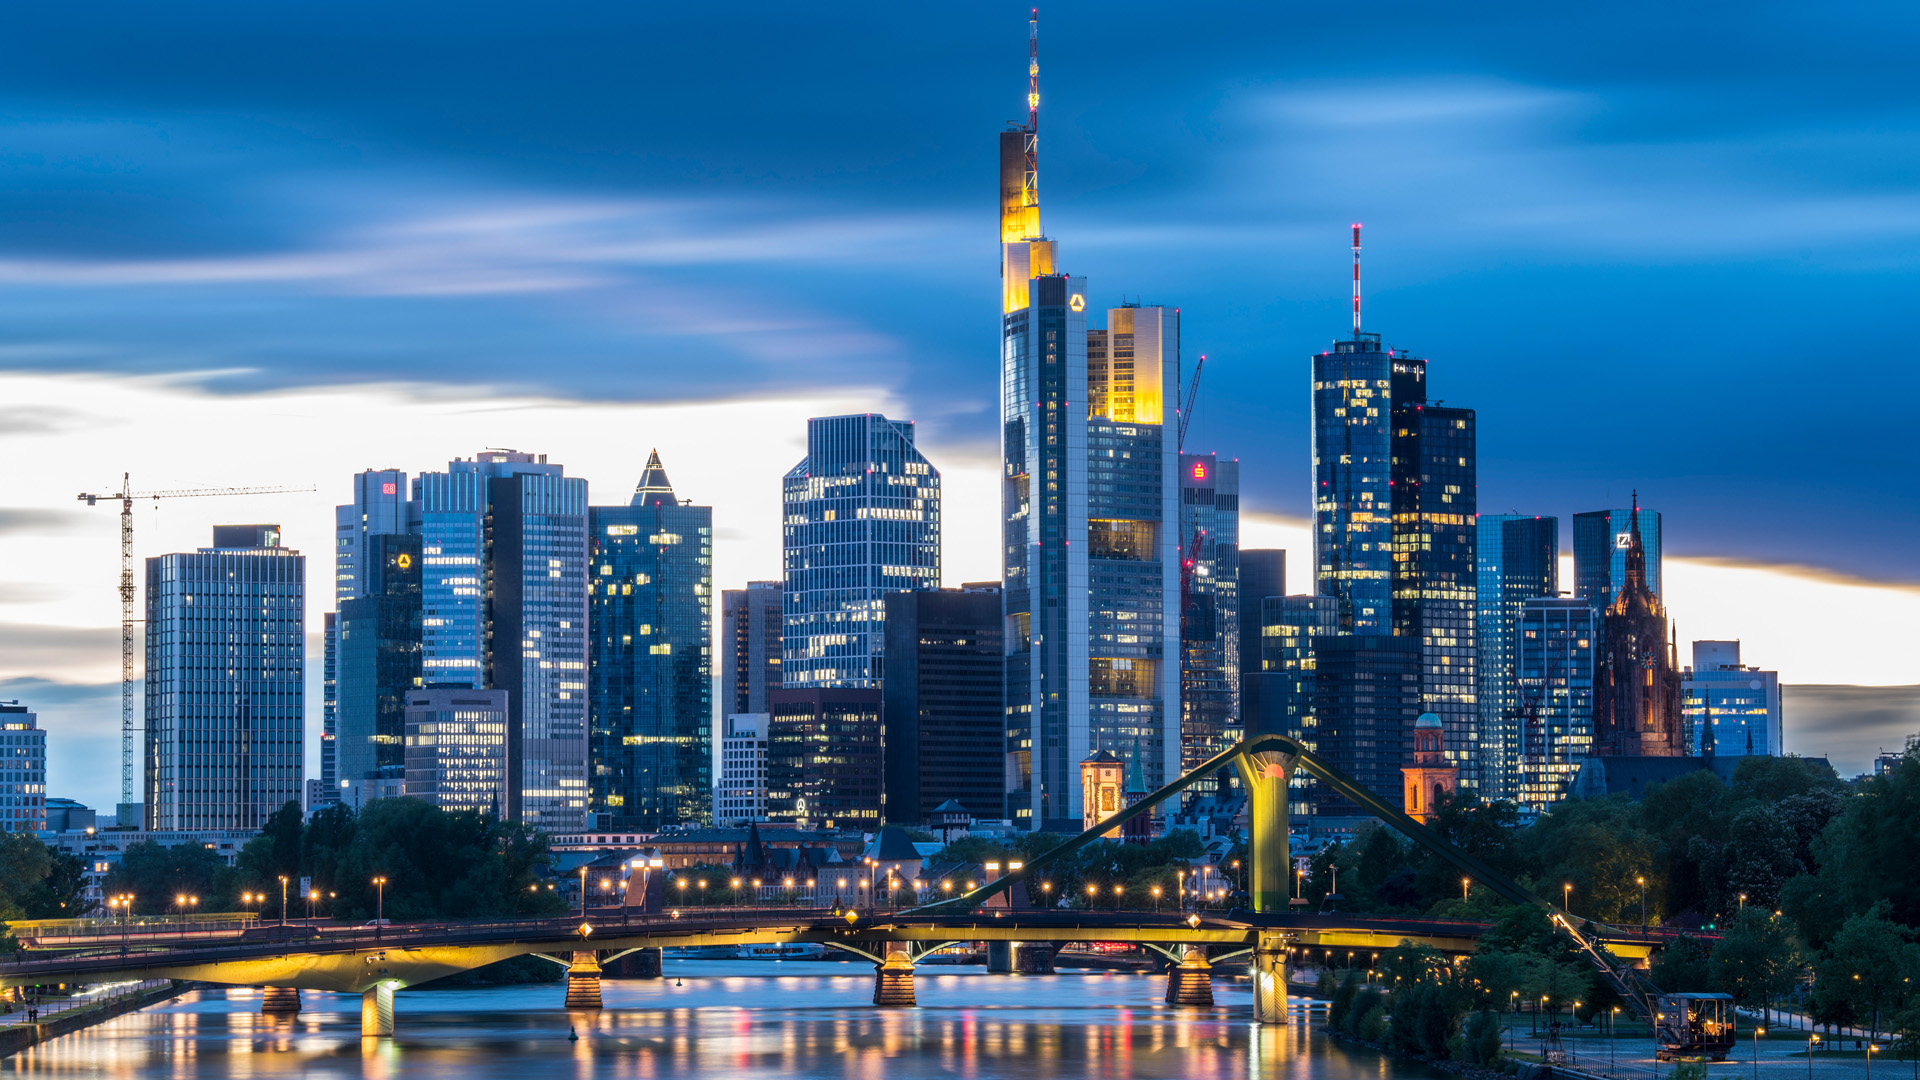 Hochhäuser des Bankenviertels in Frankfurt | picture alliance/dpa